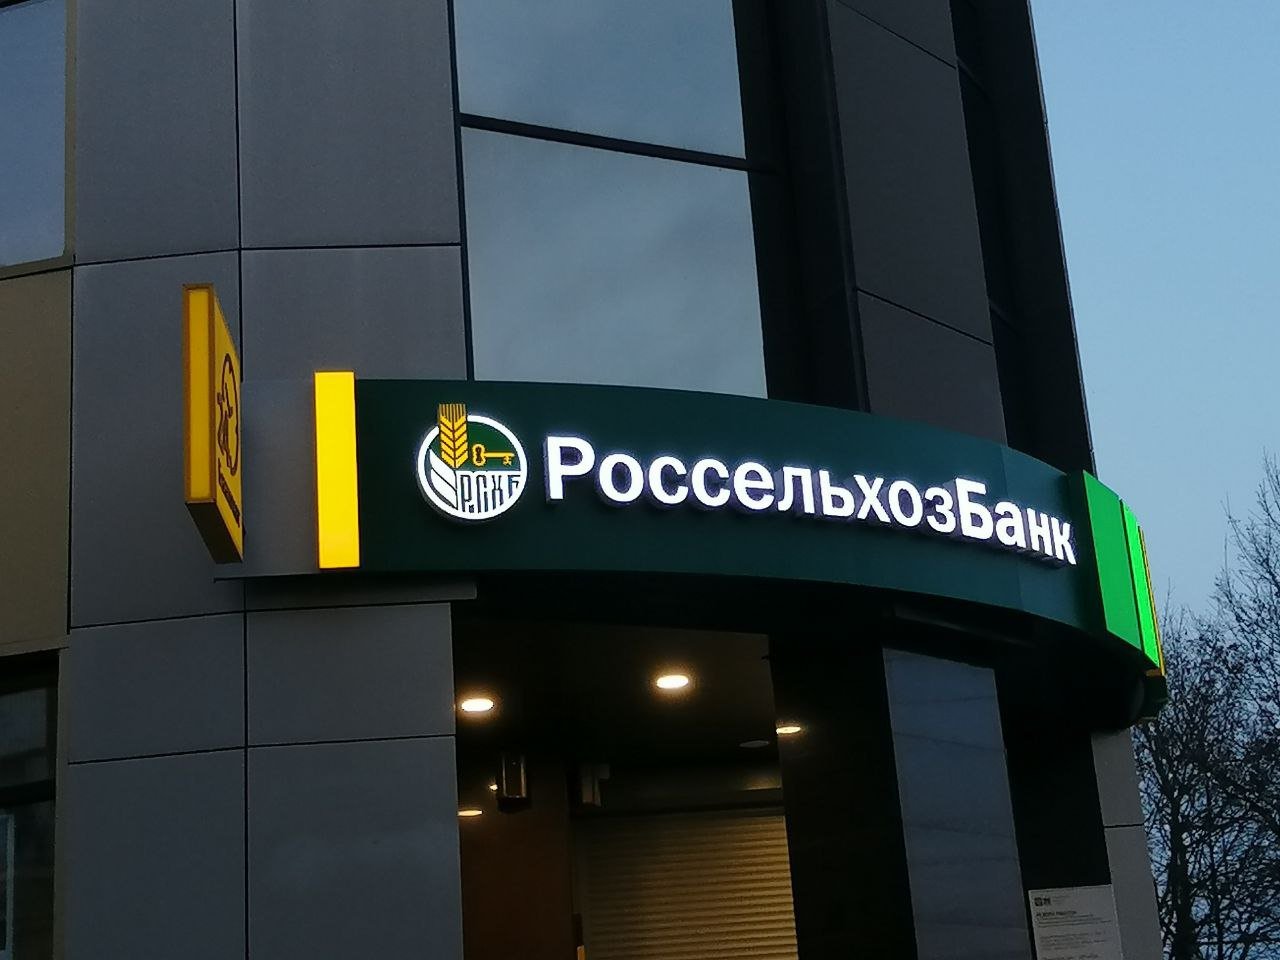 Ruska poljoprivredna banka